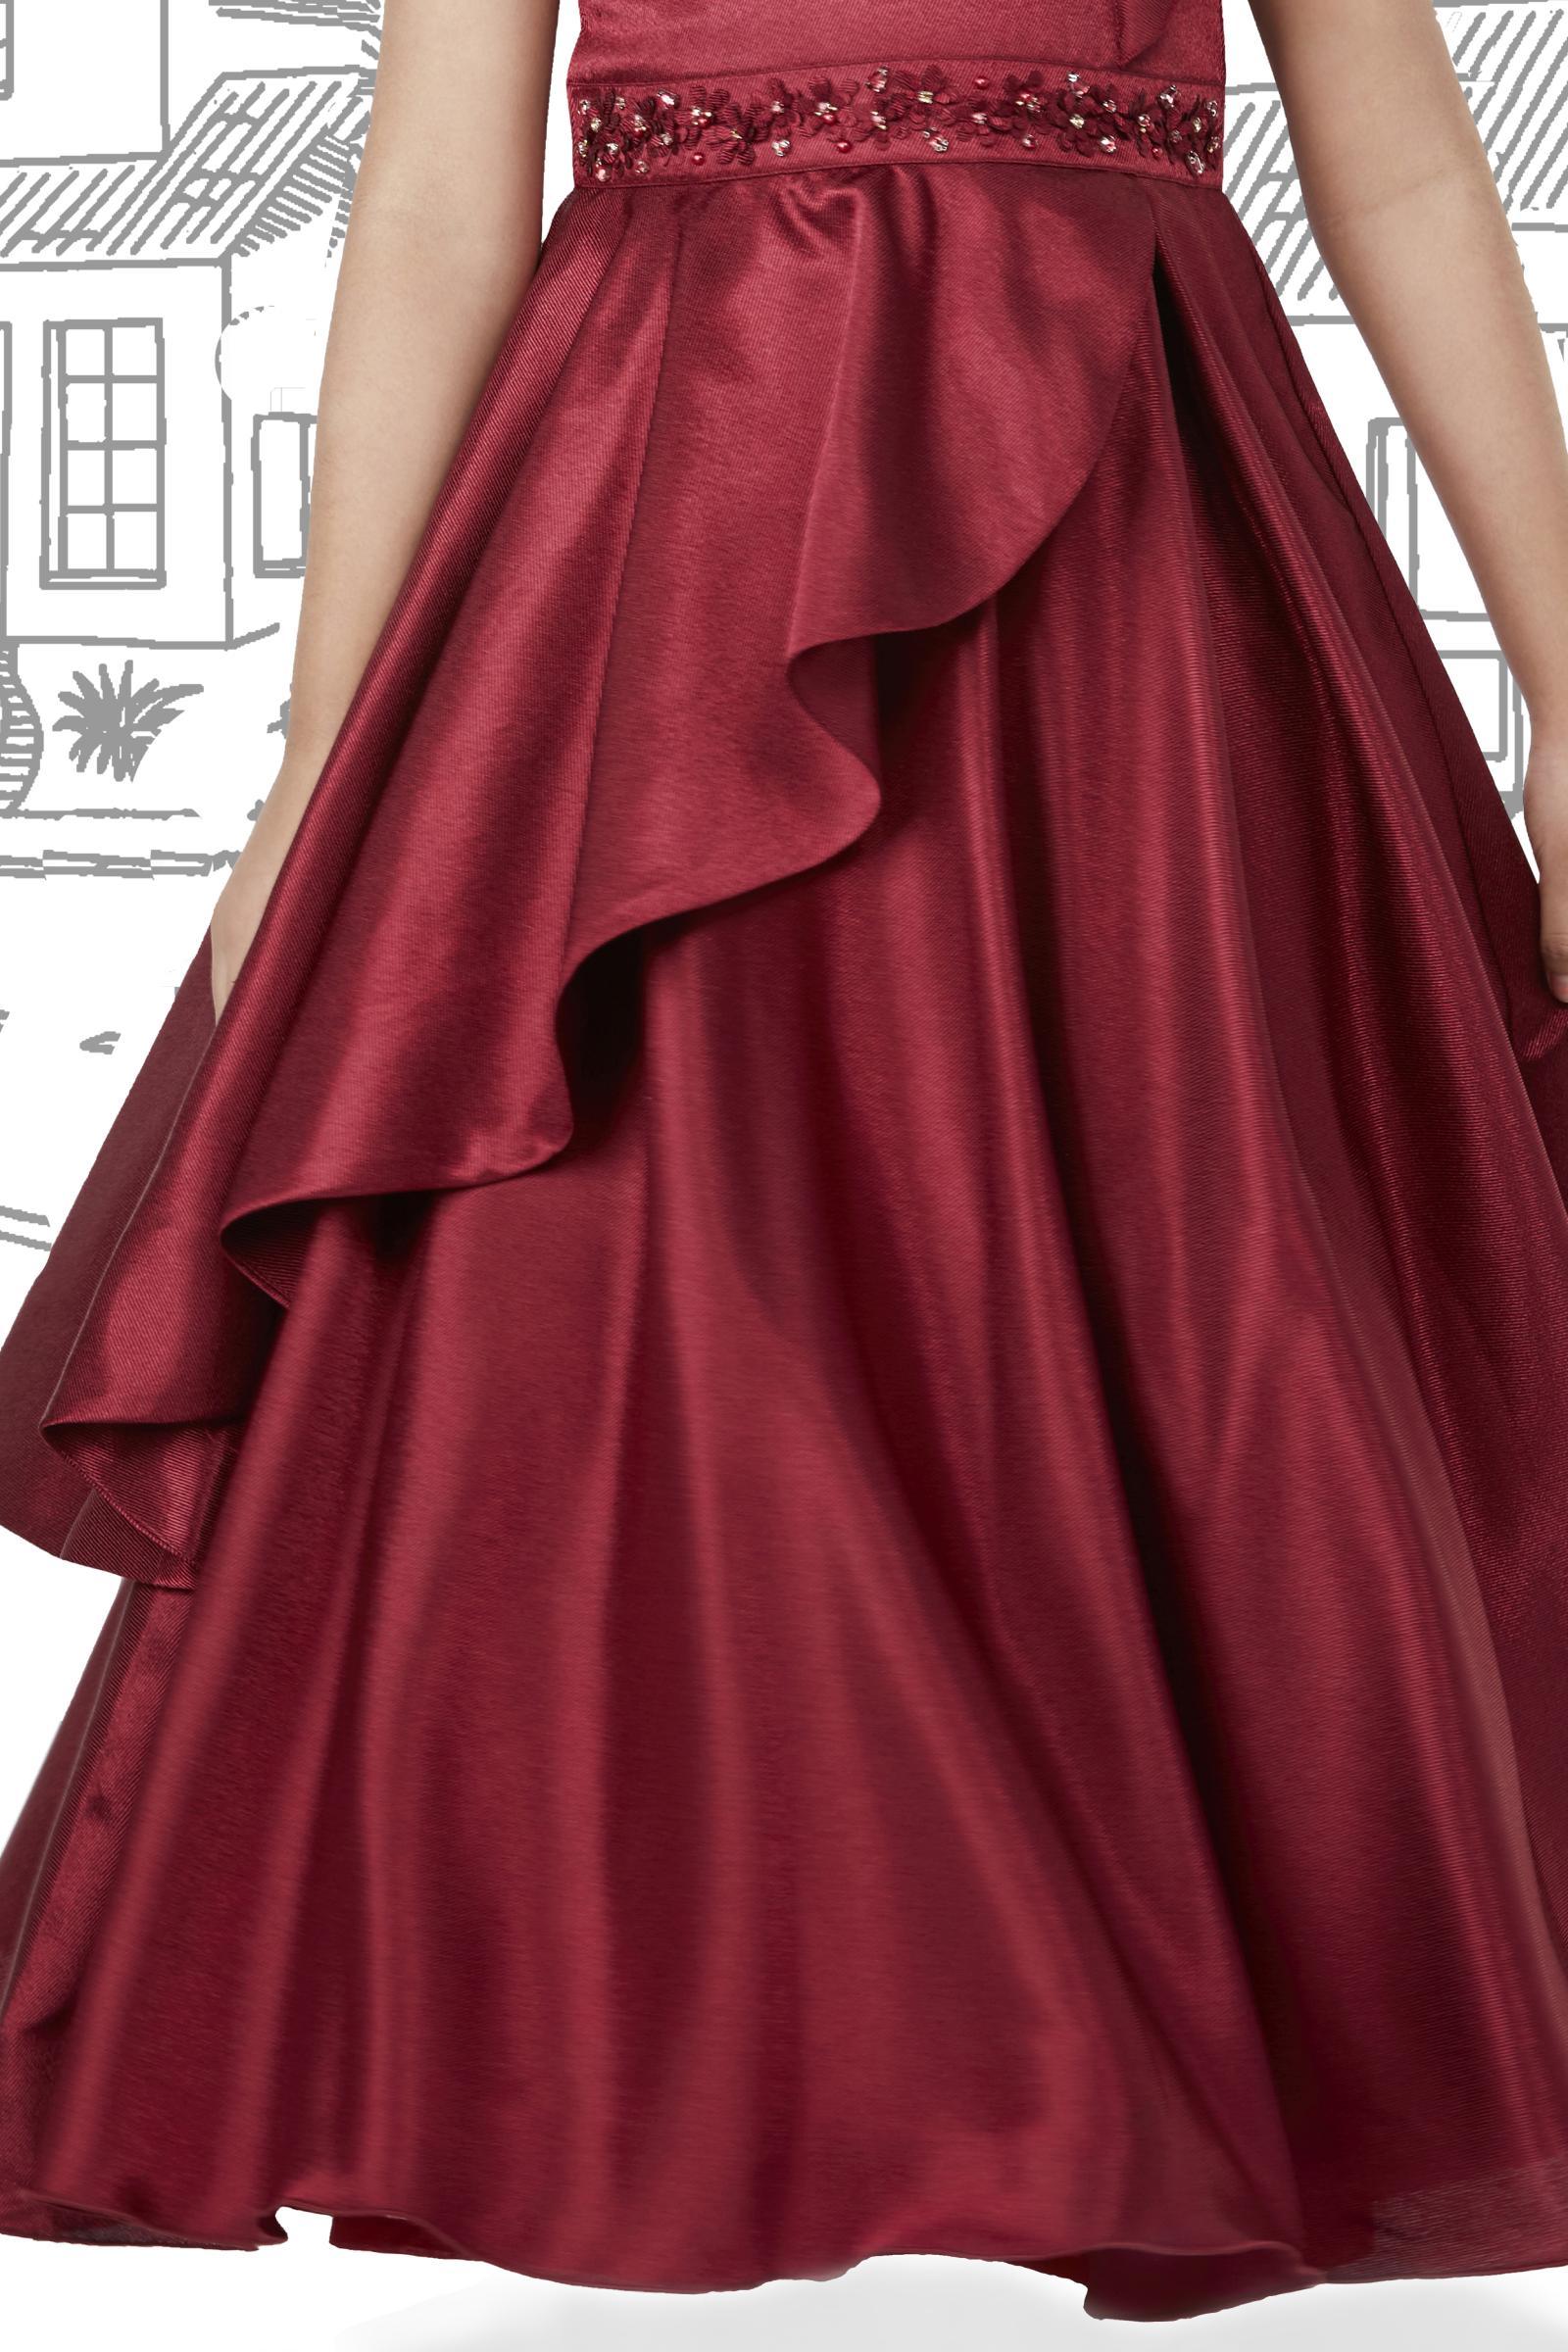 Ivory Satin One Shoulder Wedding Dresses for sale | eBay